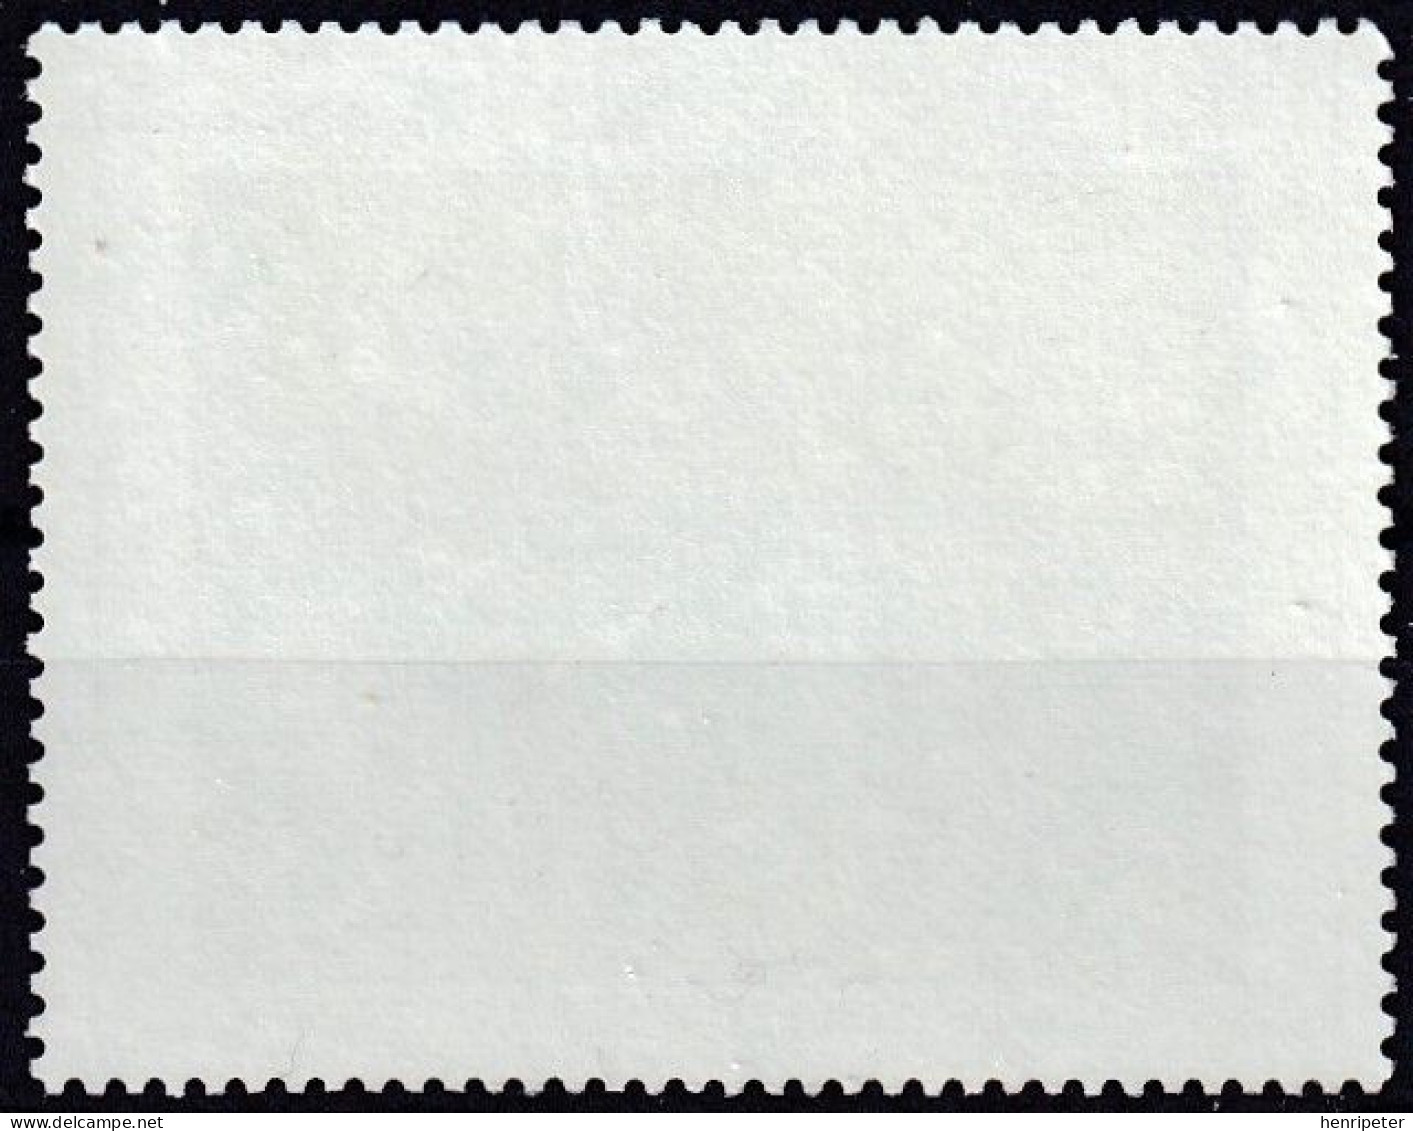 Timbre-poste Gommé Dentelé Neuf** - Série Artistique CLAUDE GELLÉE Dit LE LORRAIN - N° 2211 (Yvert) - France 1982 - Unused Stamps